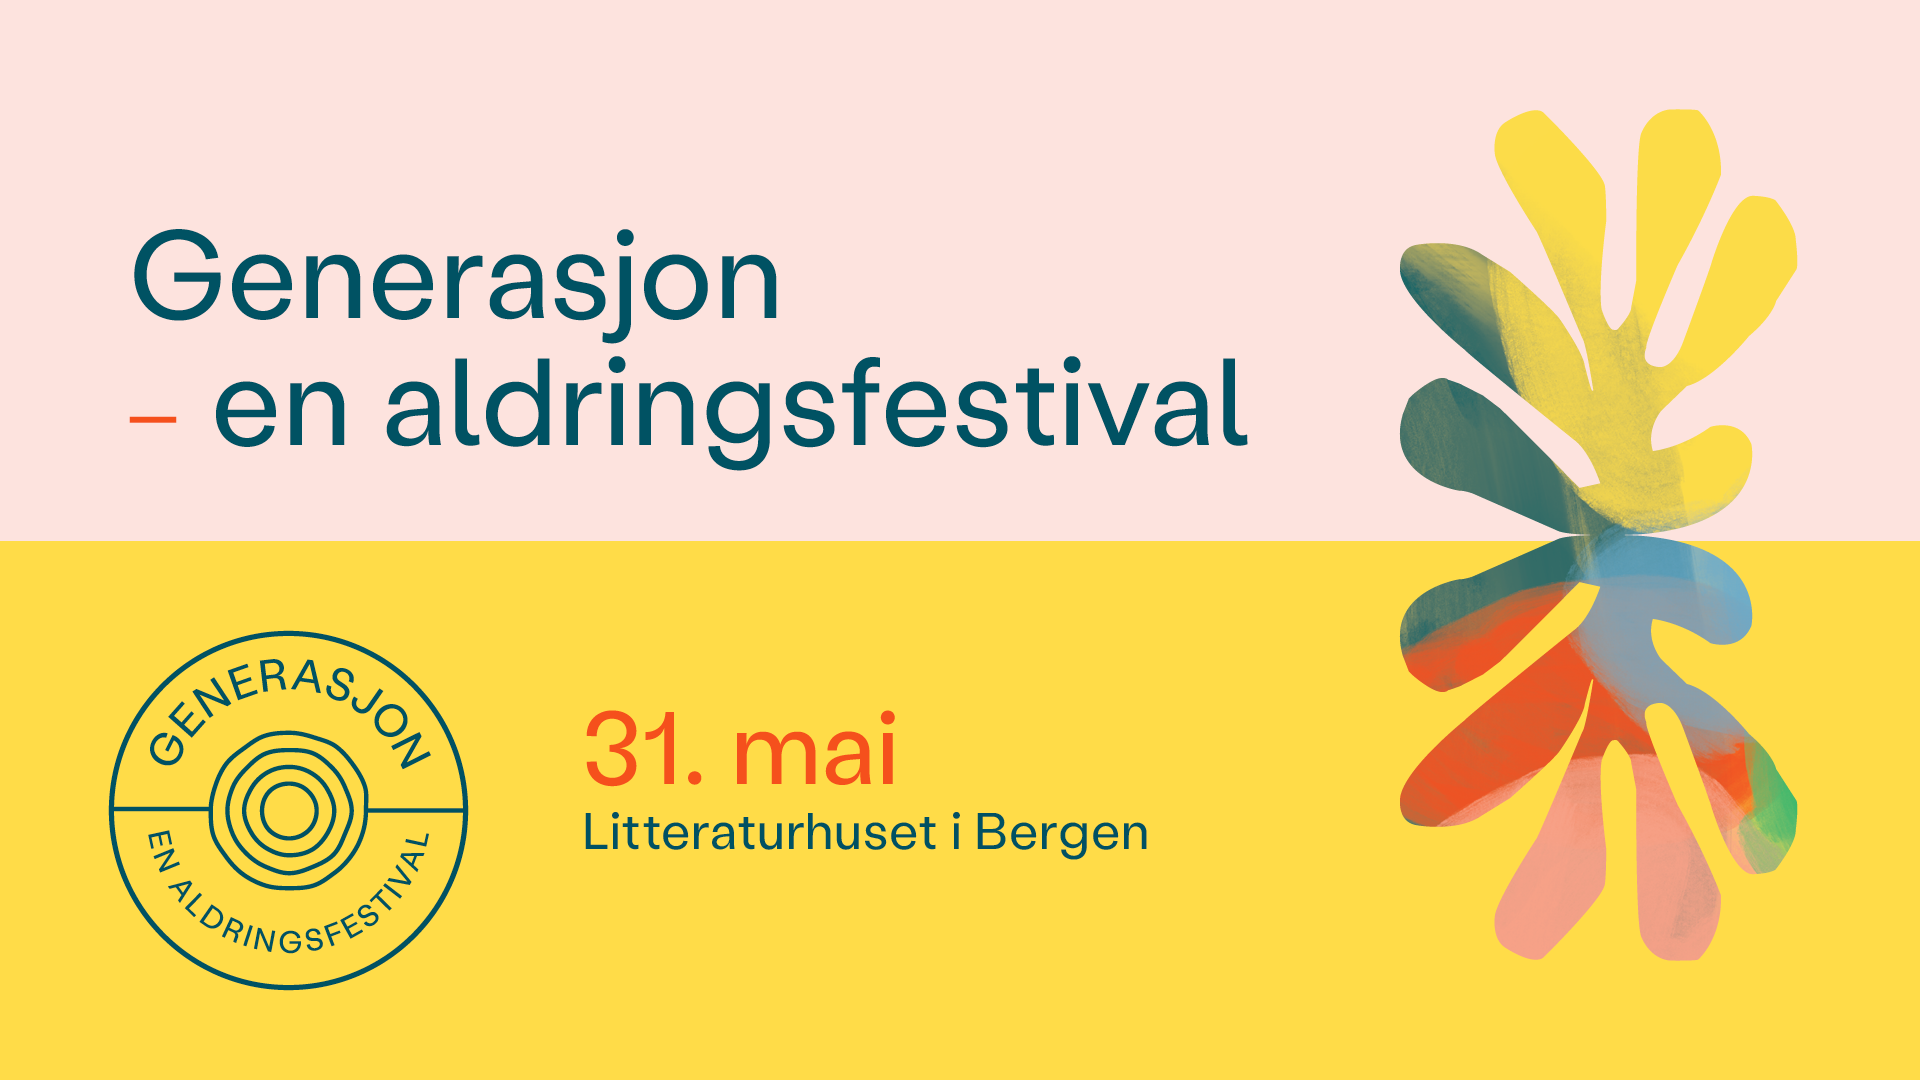 grafisk element med teksten: Generasjon - en aldringsfestival 31. mai Litteraturhuset i Bergen